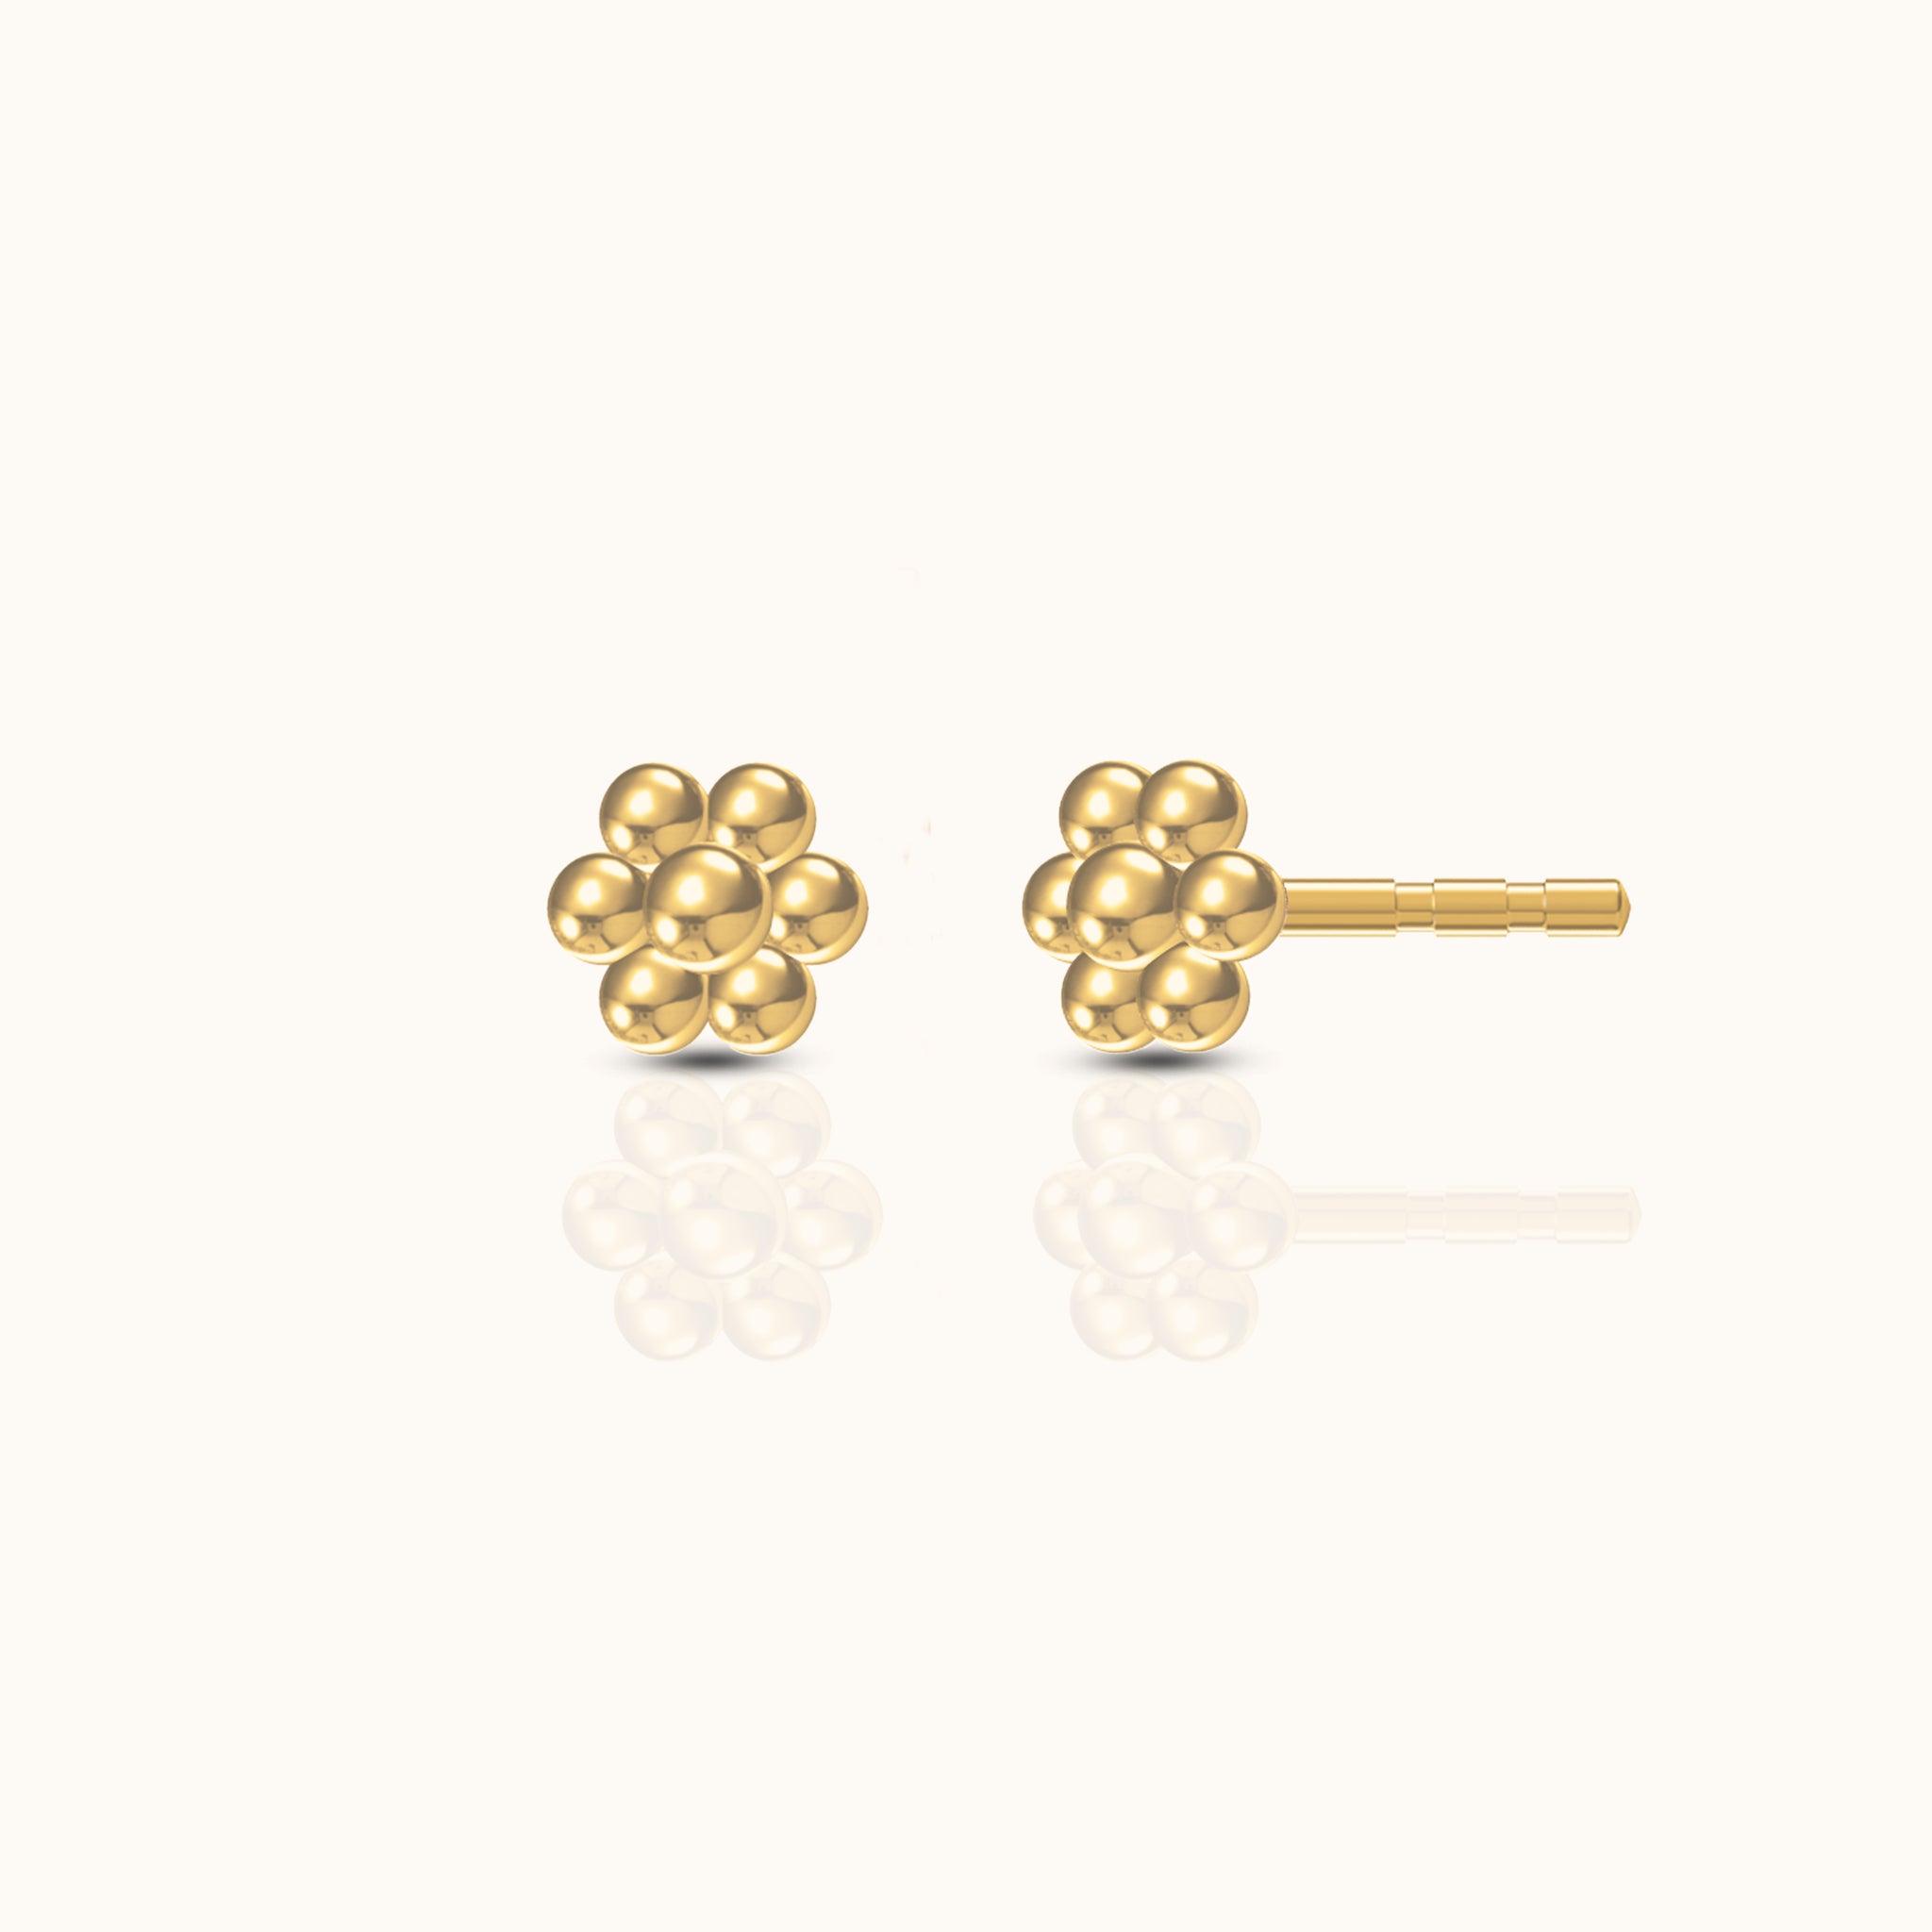 Hexagon Beaded Stud Earrings in Gold by Doviana